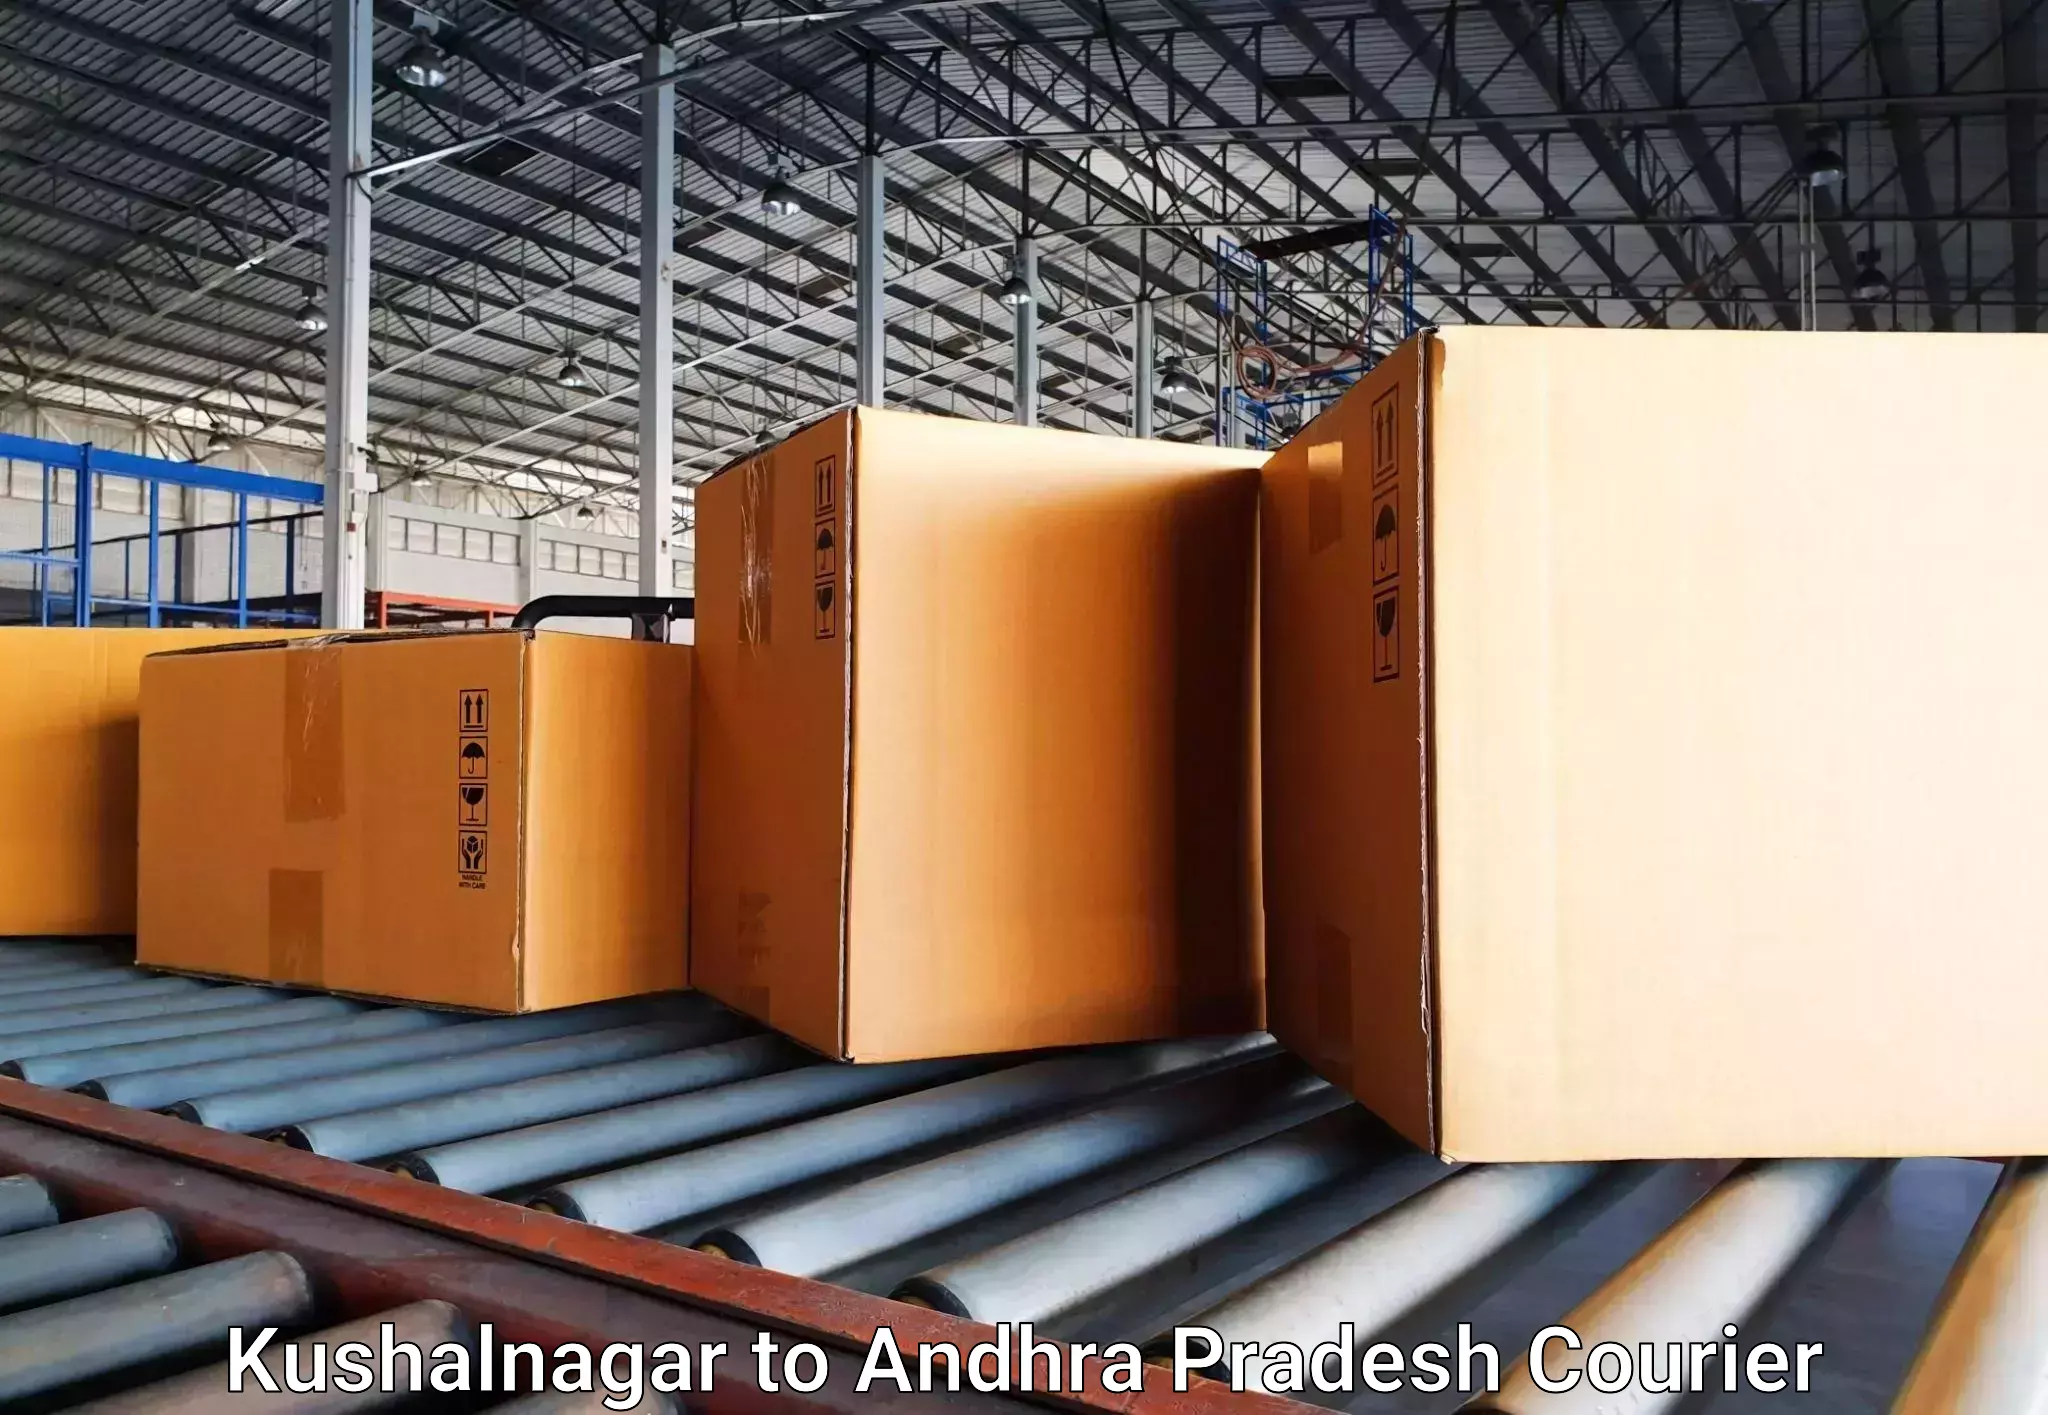 Luggage transport service Kushalnagar to Andhra Pradesh